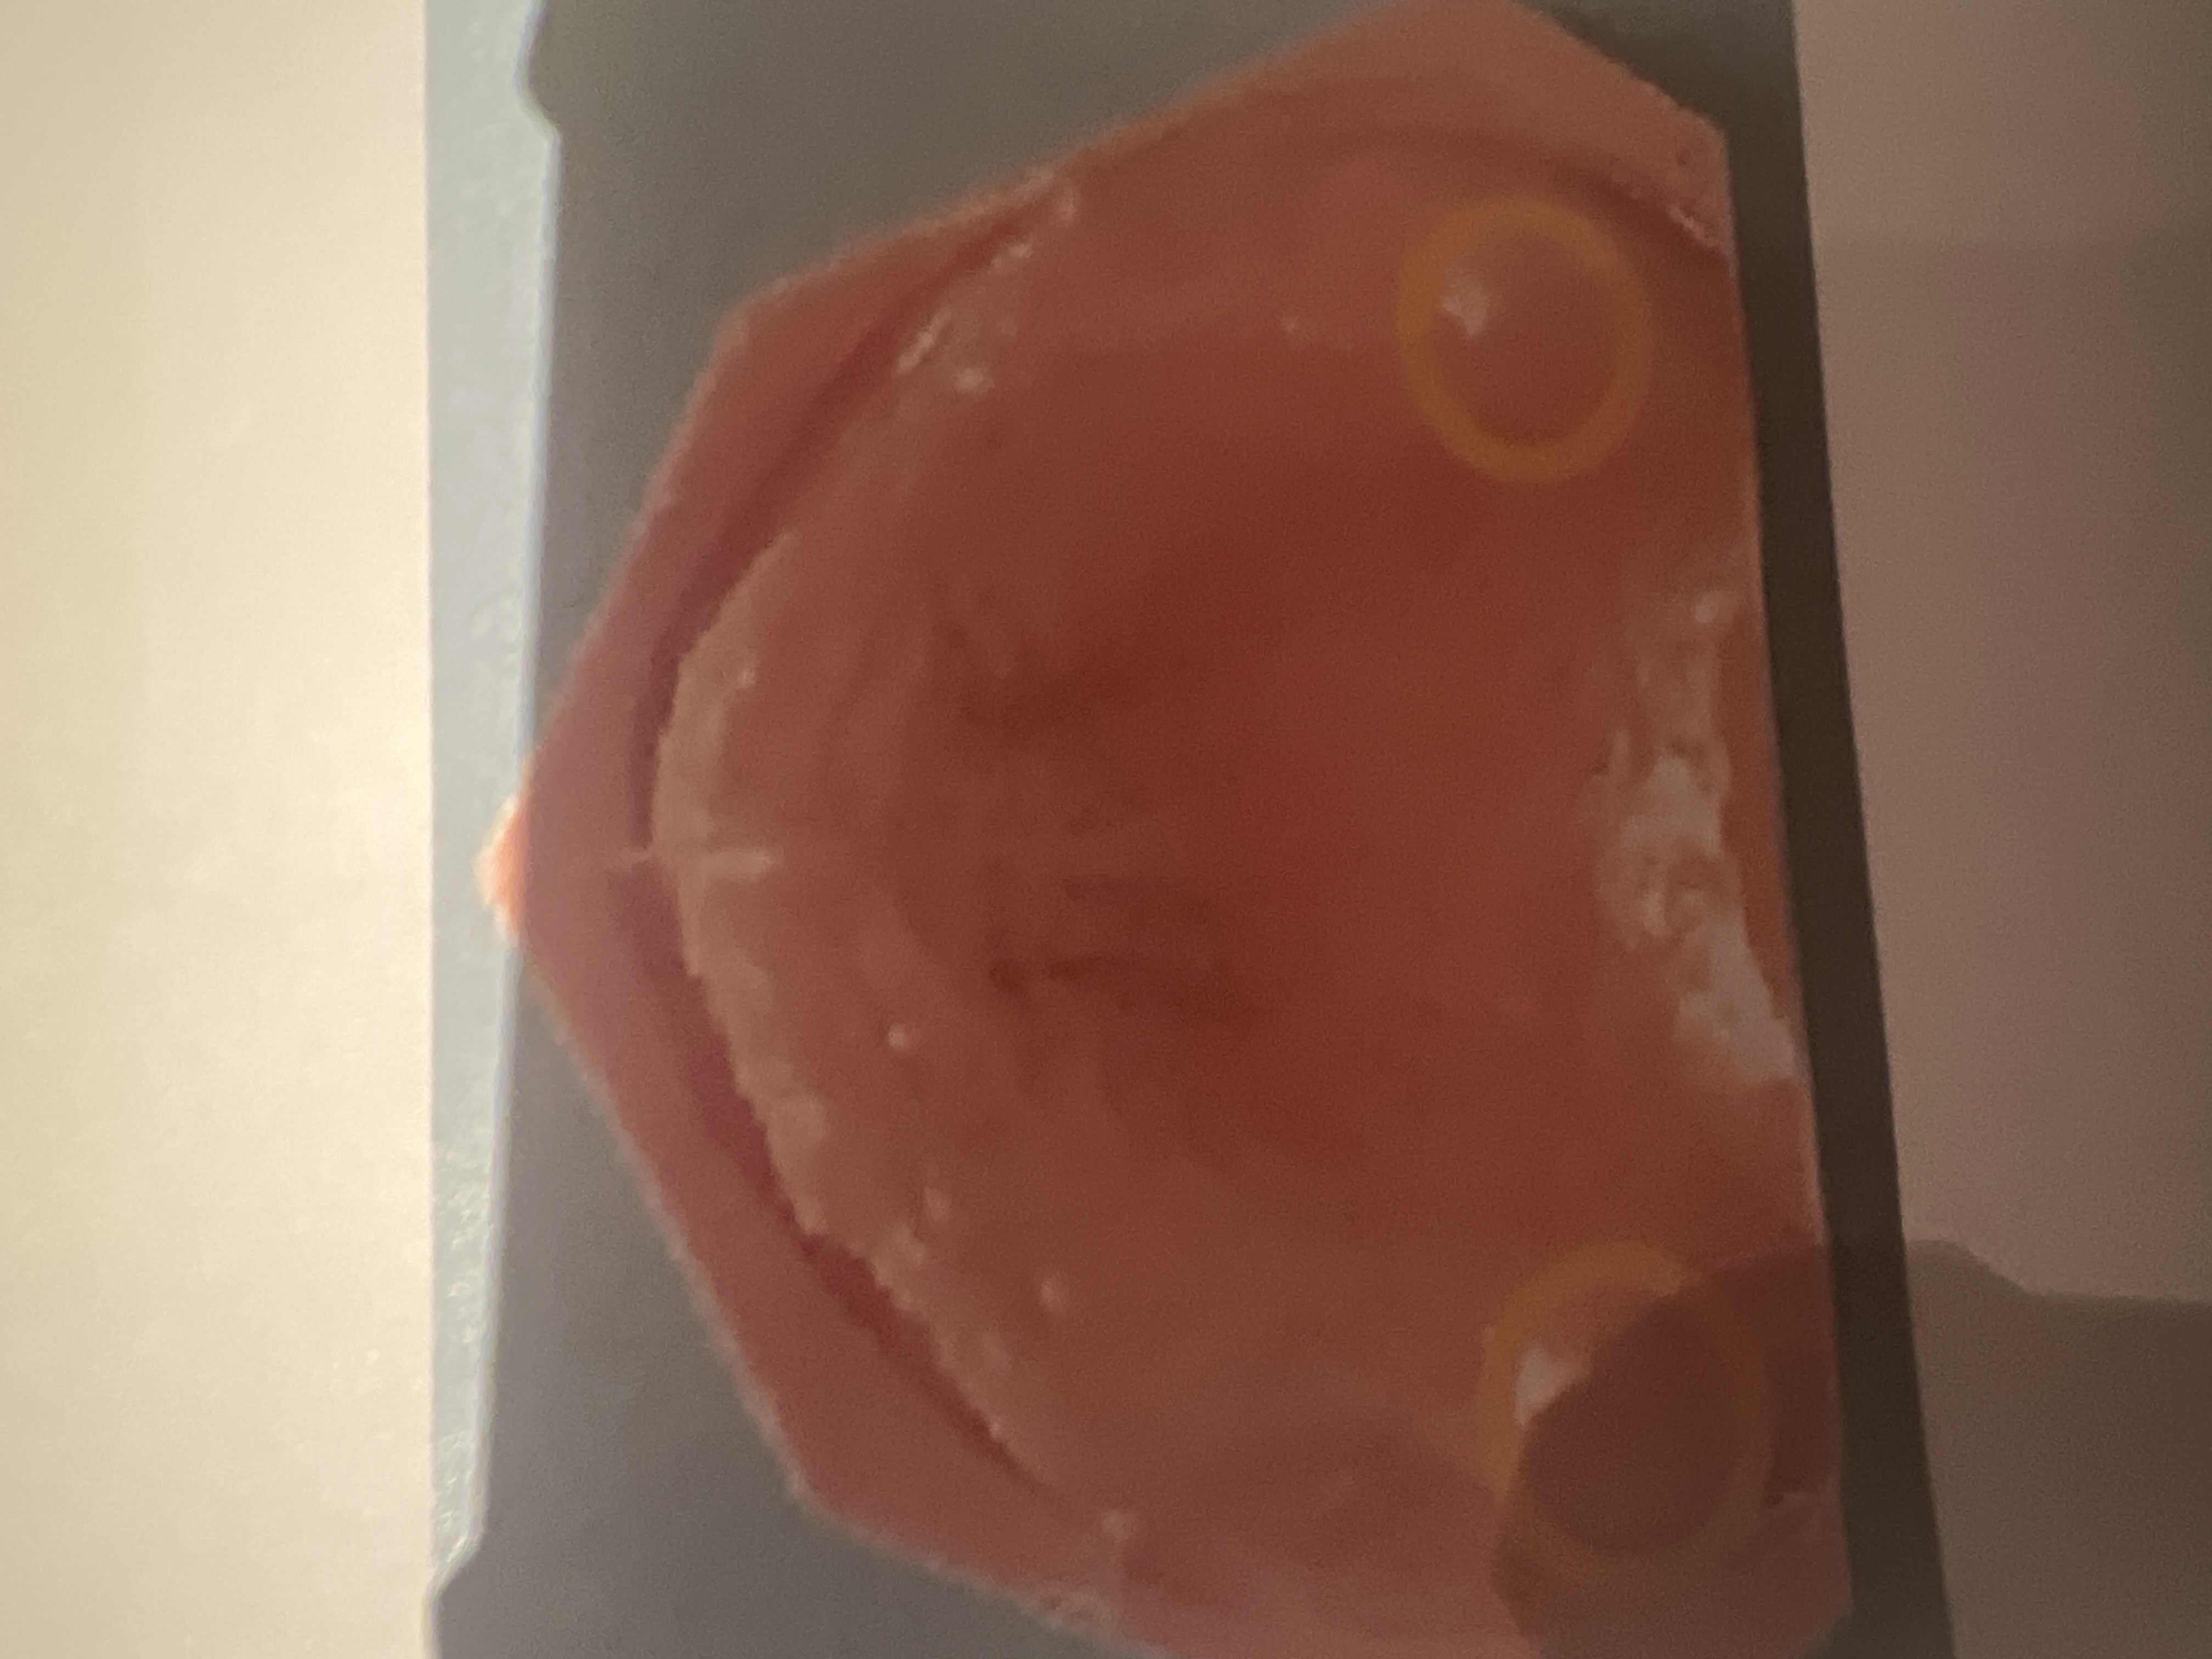 <p>Bovenkaakknobbel of tuber maxillae </p>